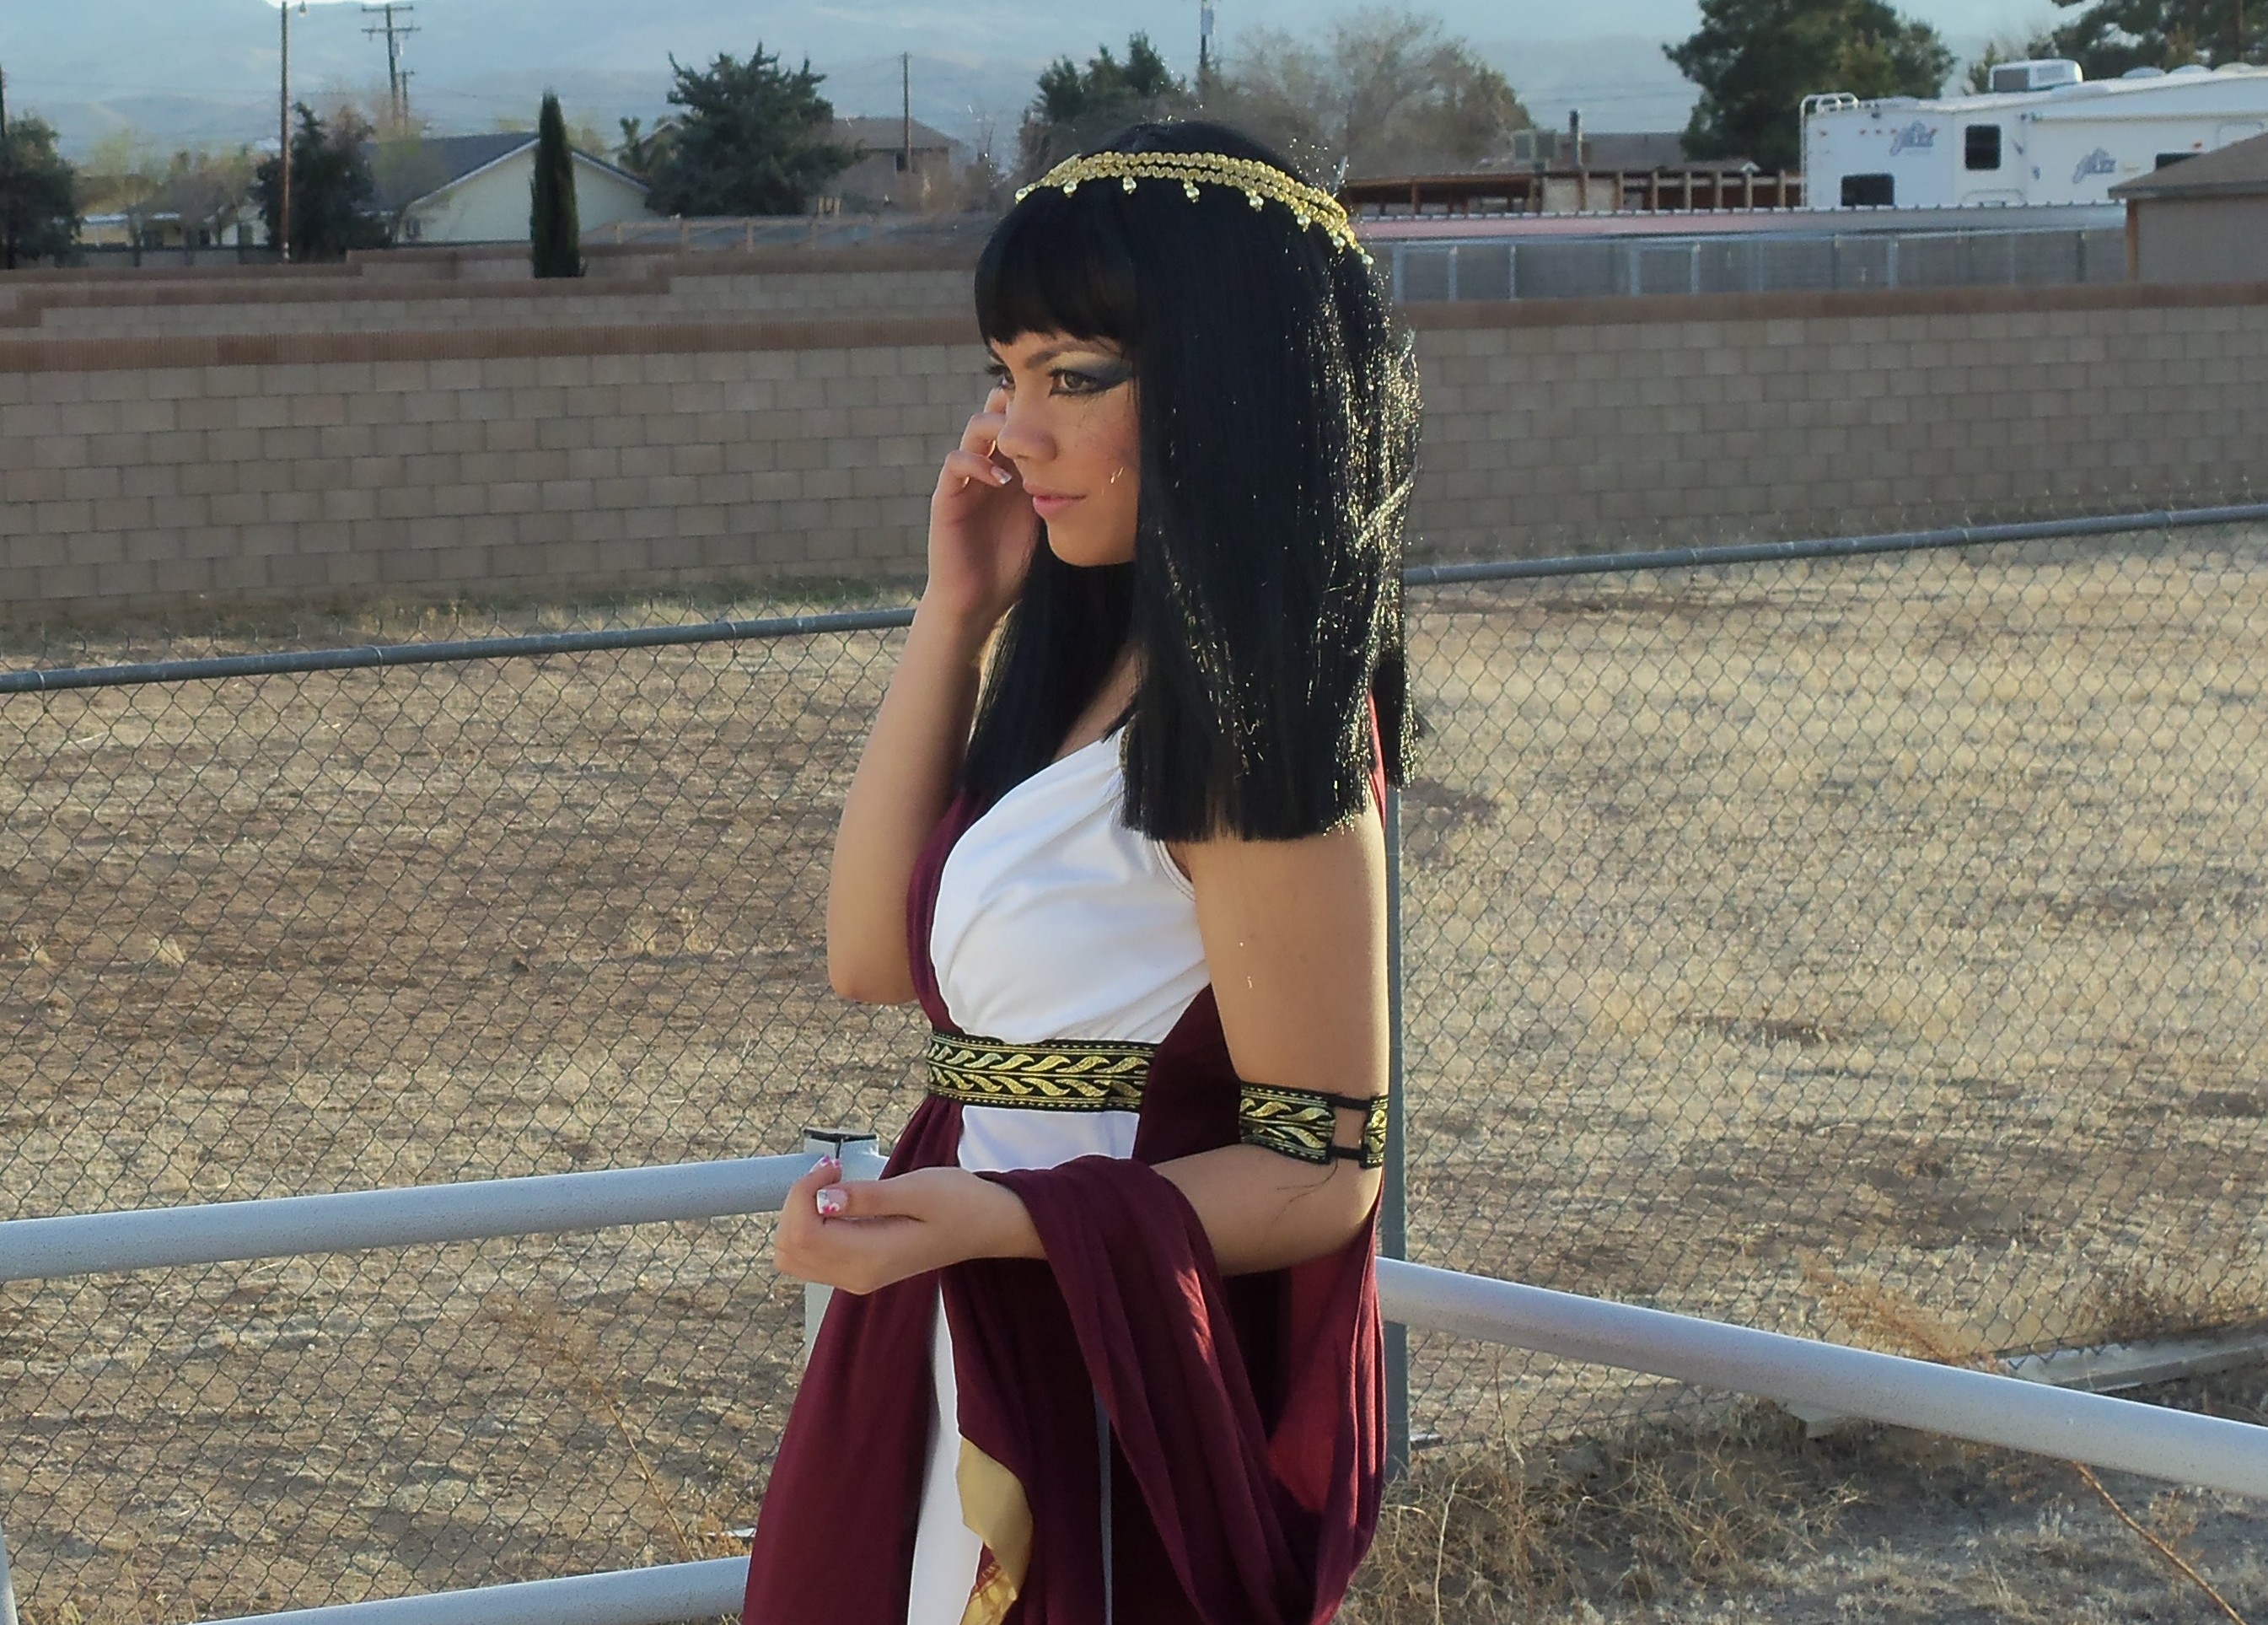 Cleopatra on location